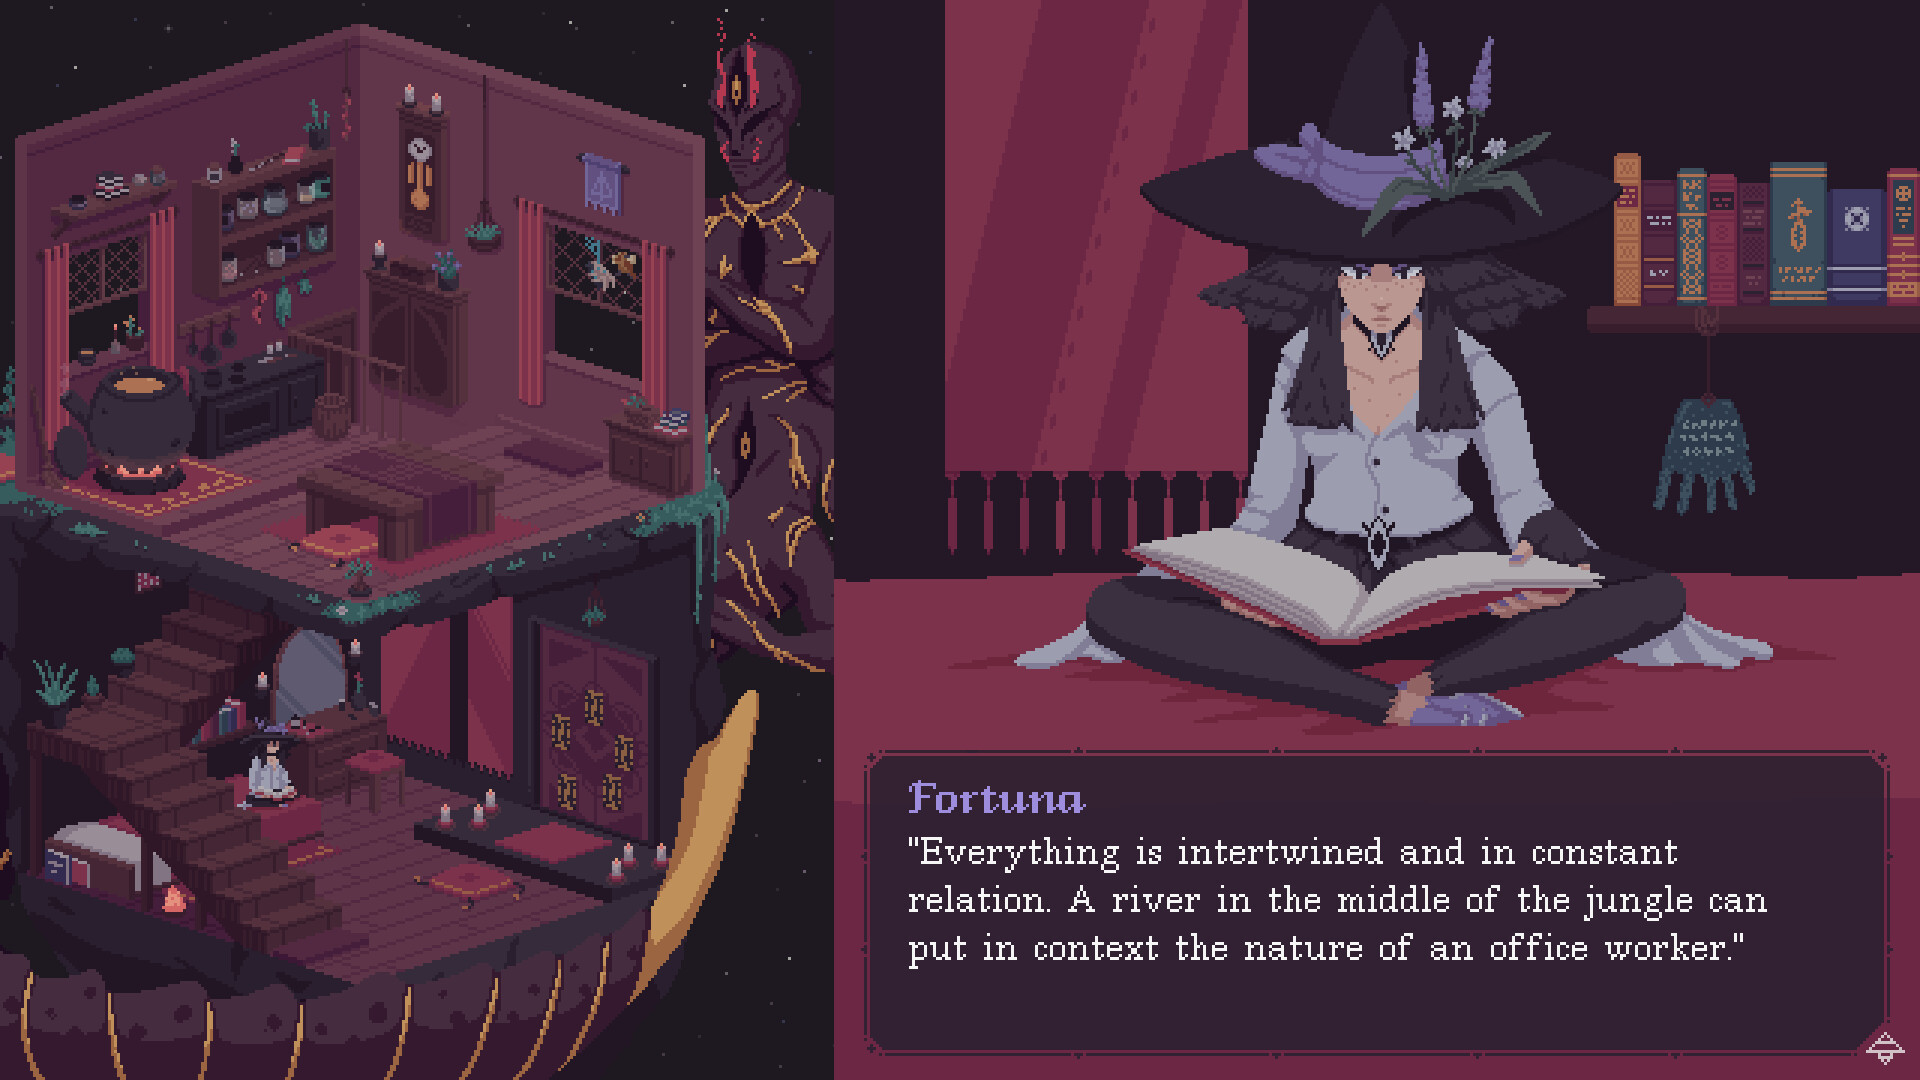 dialogo dentro del juego con el personaje de Fortuna